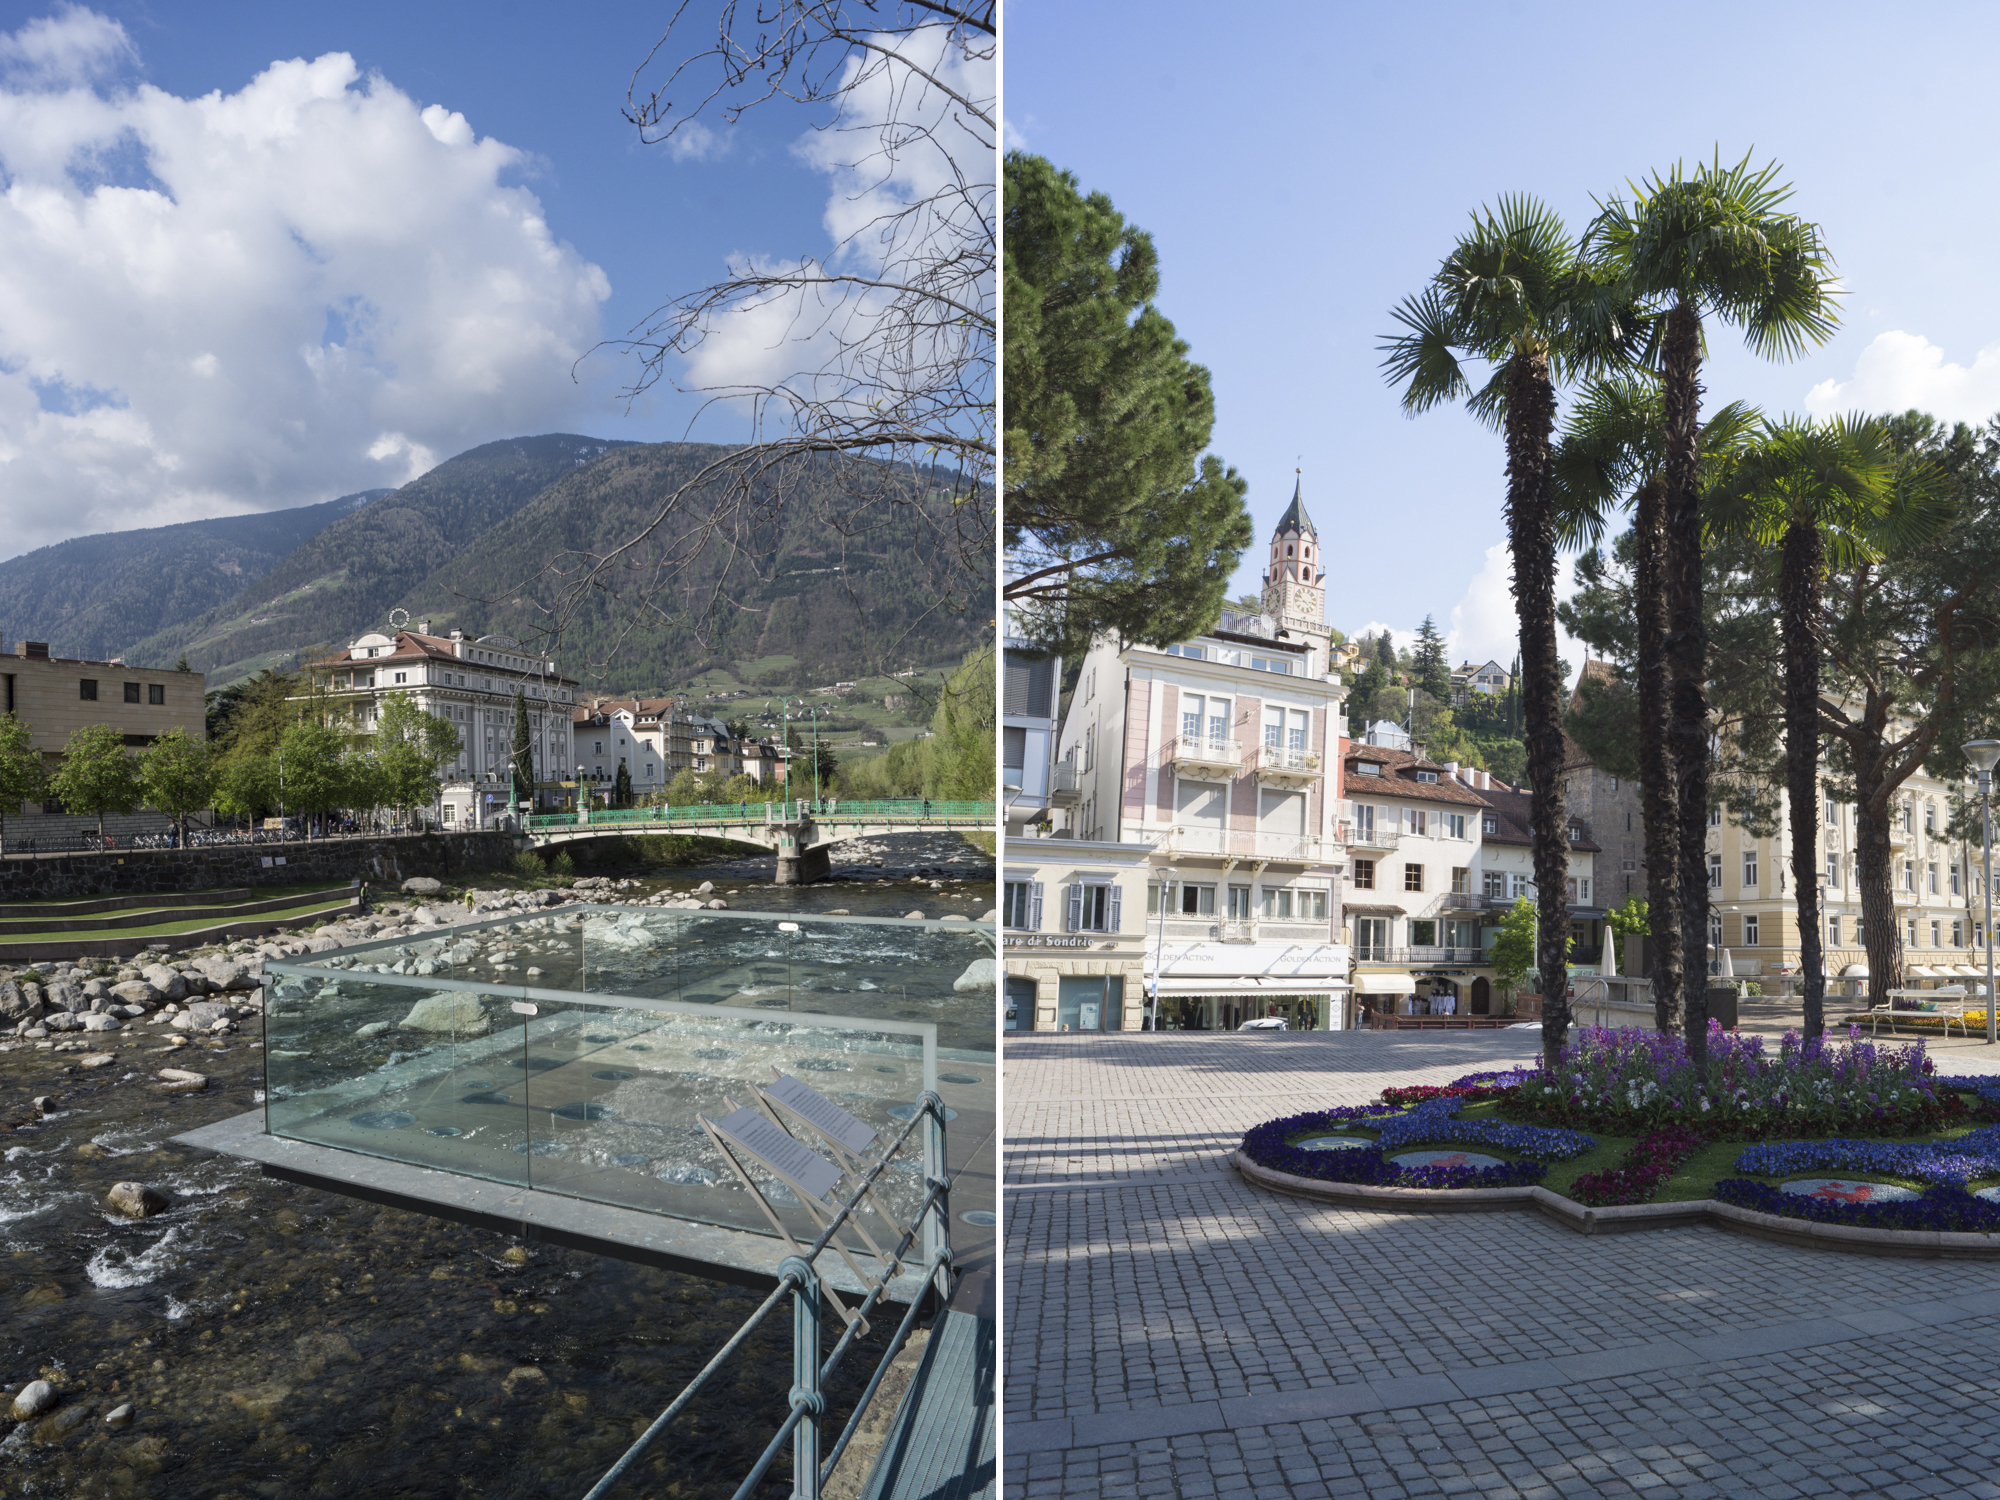 Urlaub in Südtirol - die besten Tipps und Sehenswürdigkeiten in Meran und Umgebung